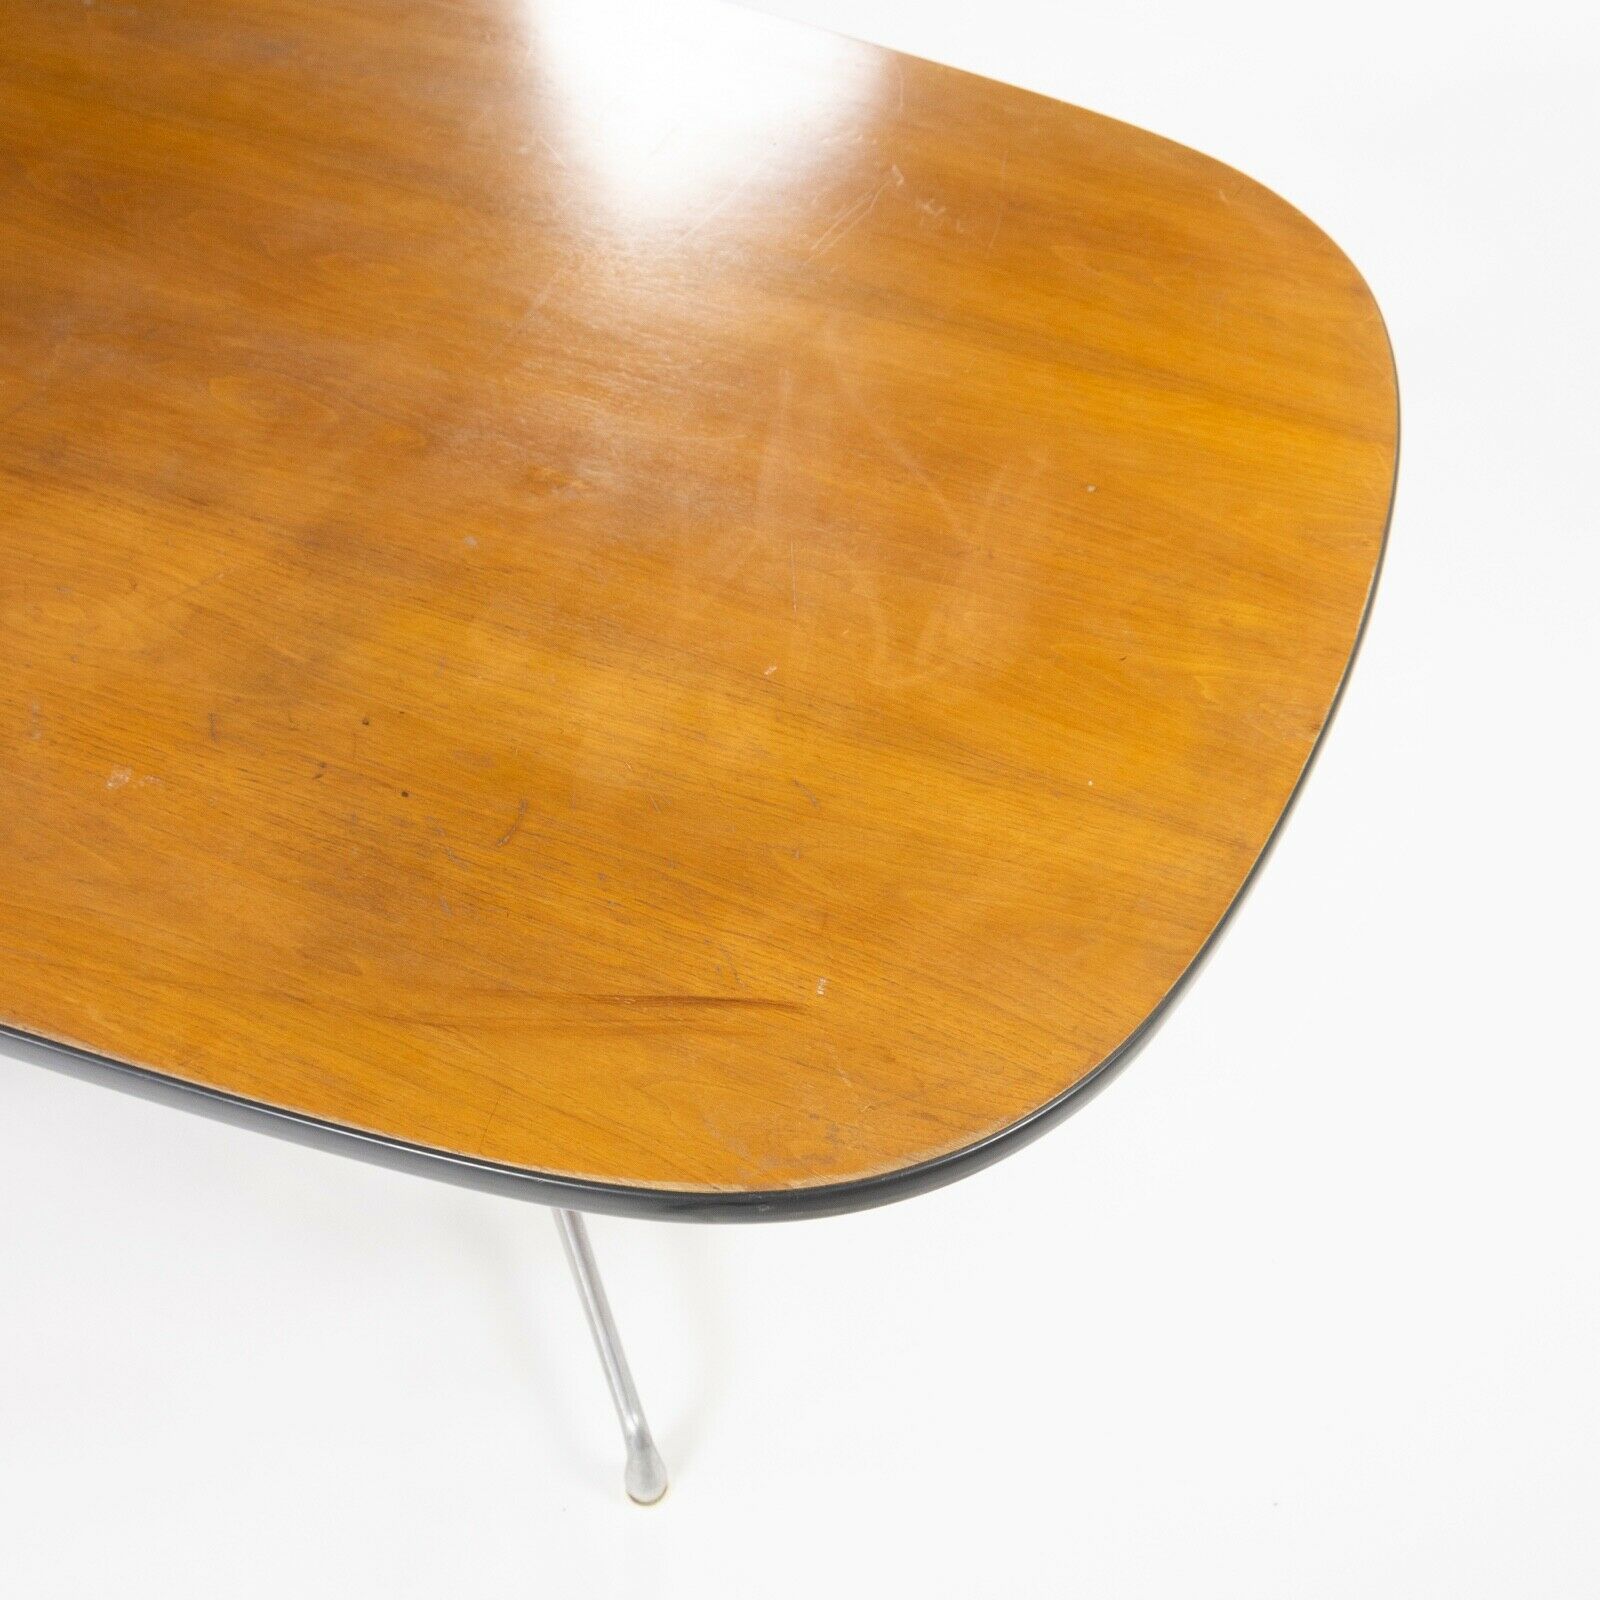 SOLD 1977 Vintage Eames Herman Miller ET153 Segmented Dining Conference Table Walnut